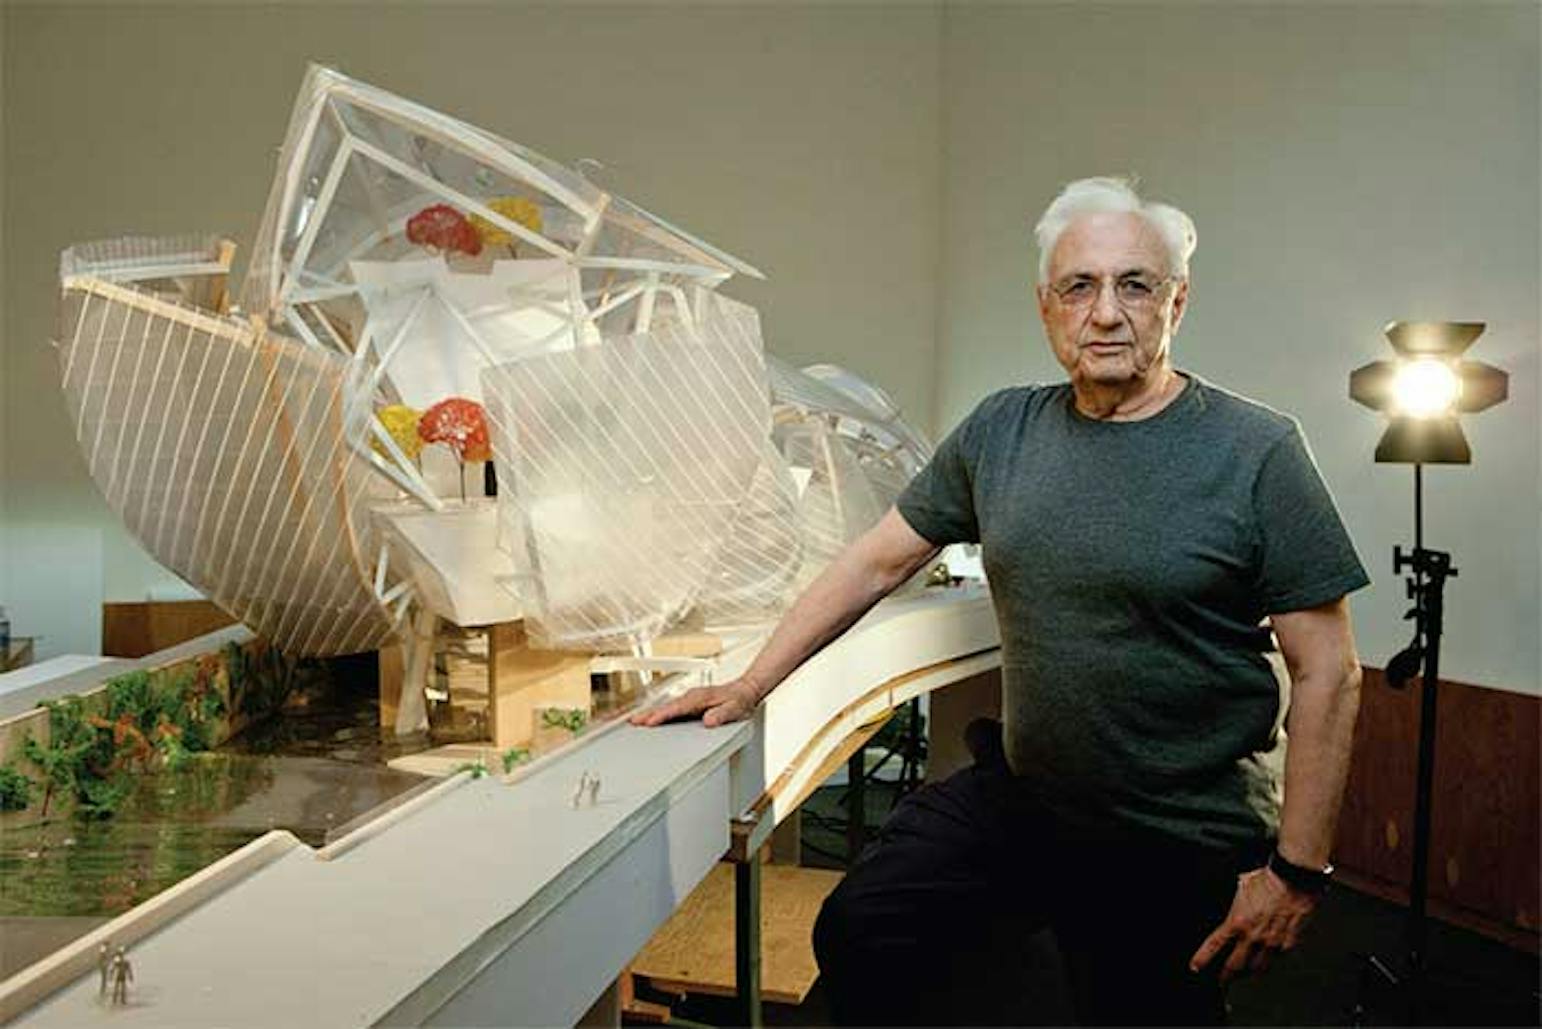 Гэри фрэнк. Фрэнк Гери. Фрэнк Гери (Frank Gehry). Фрэнк Оуэн Гери. Фрэнк Оуэн Гэри архитектура.